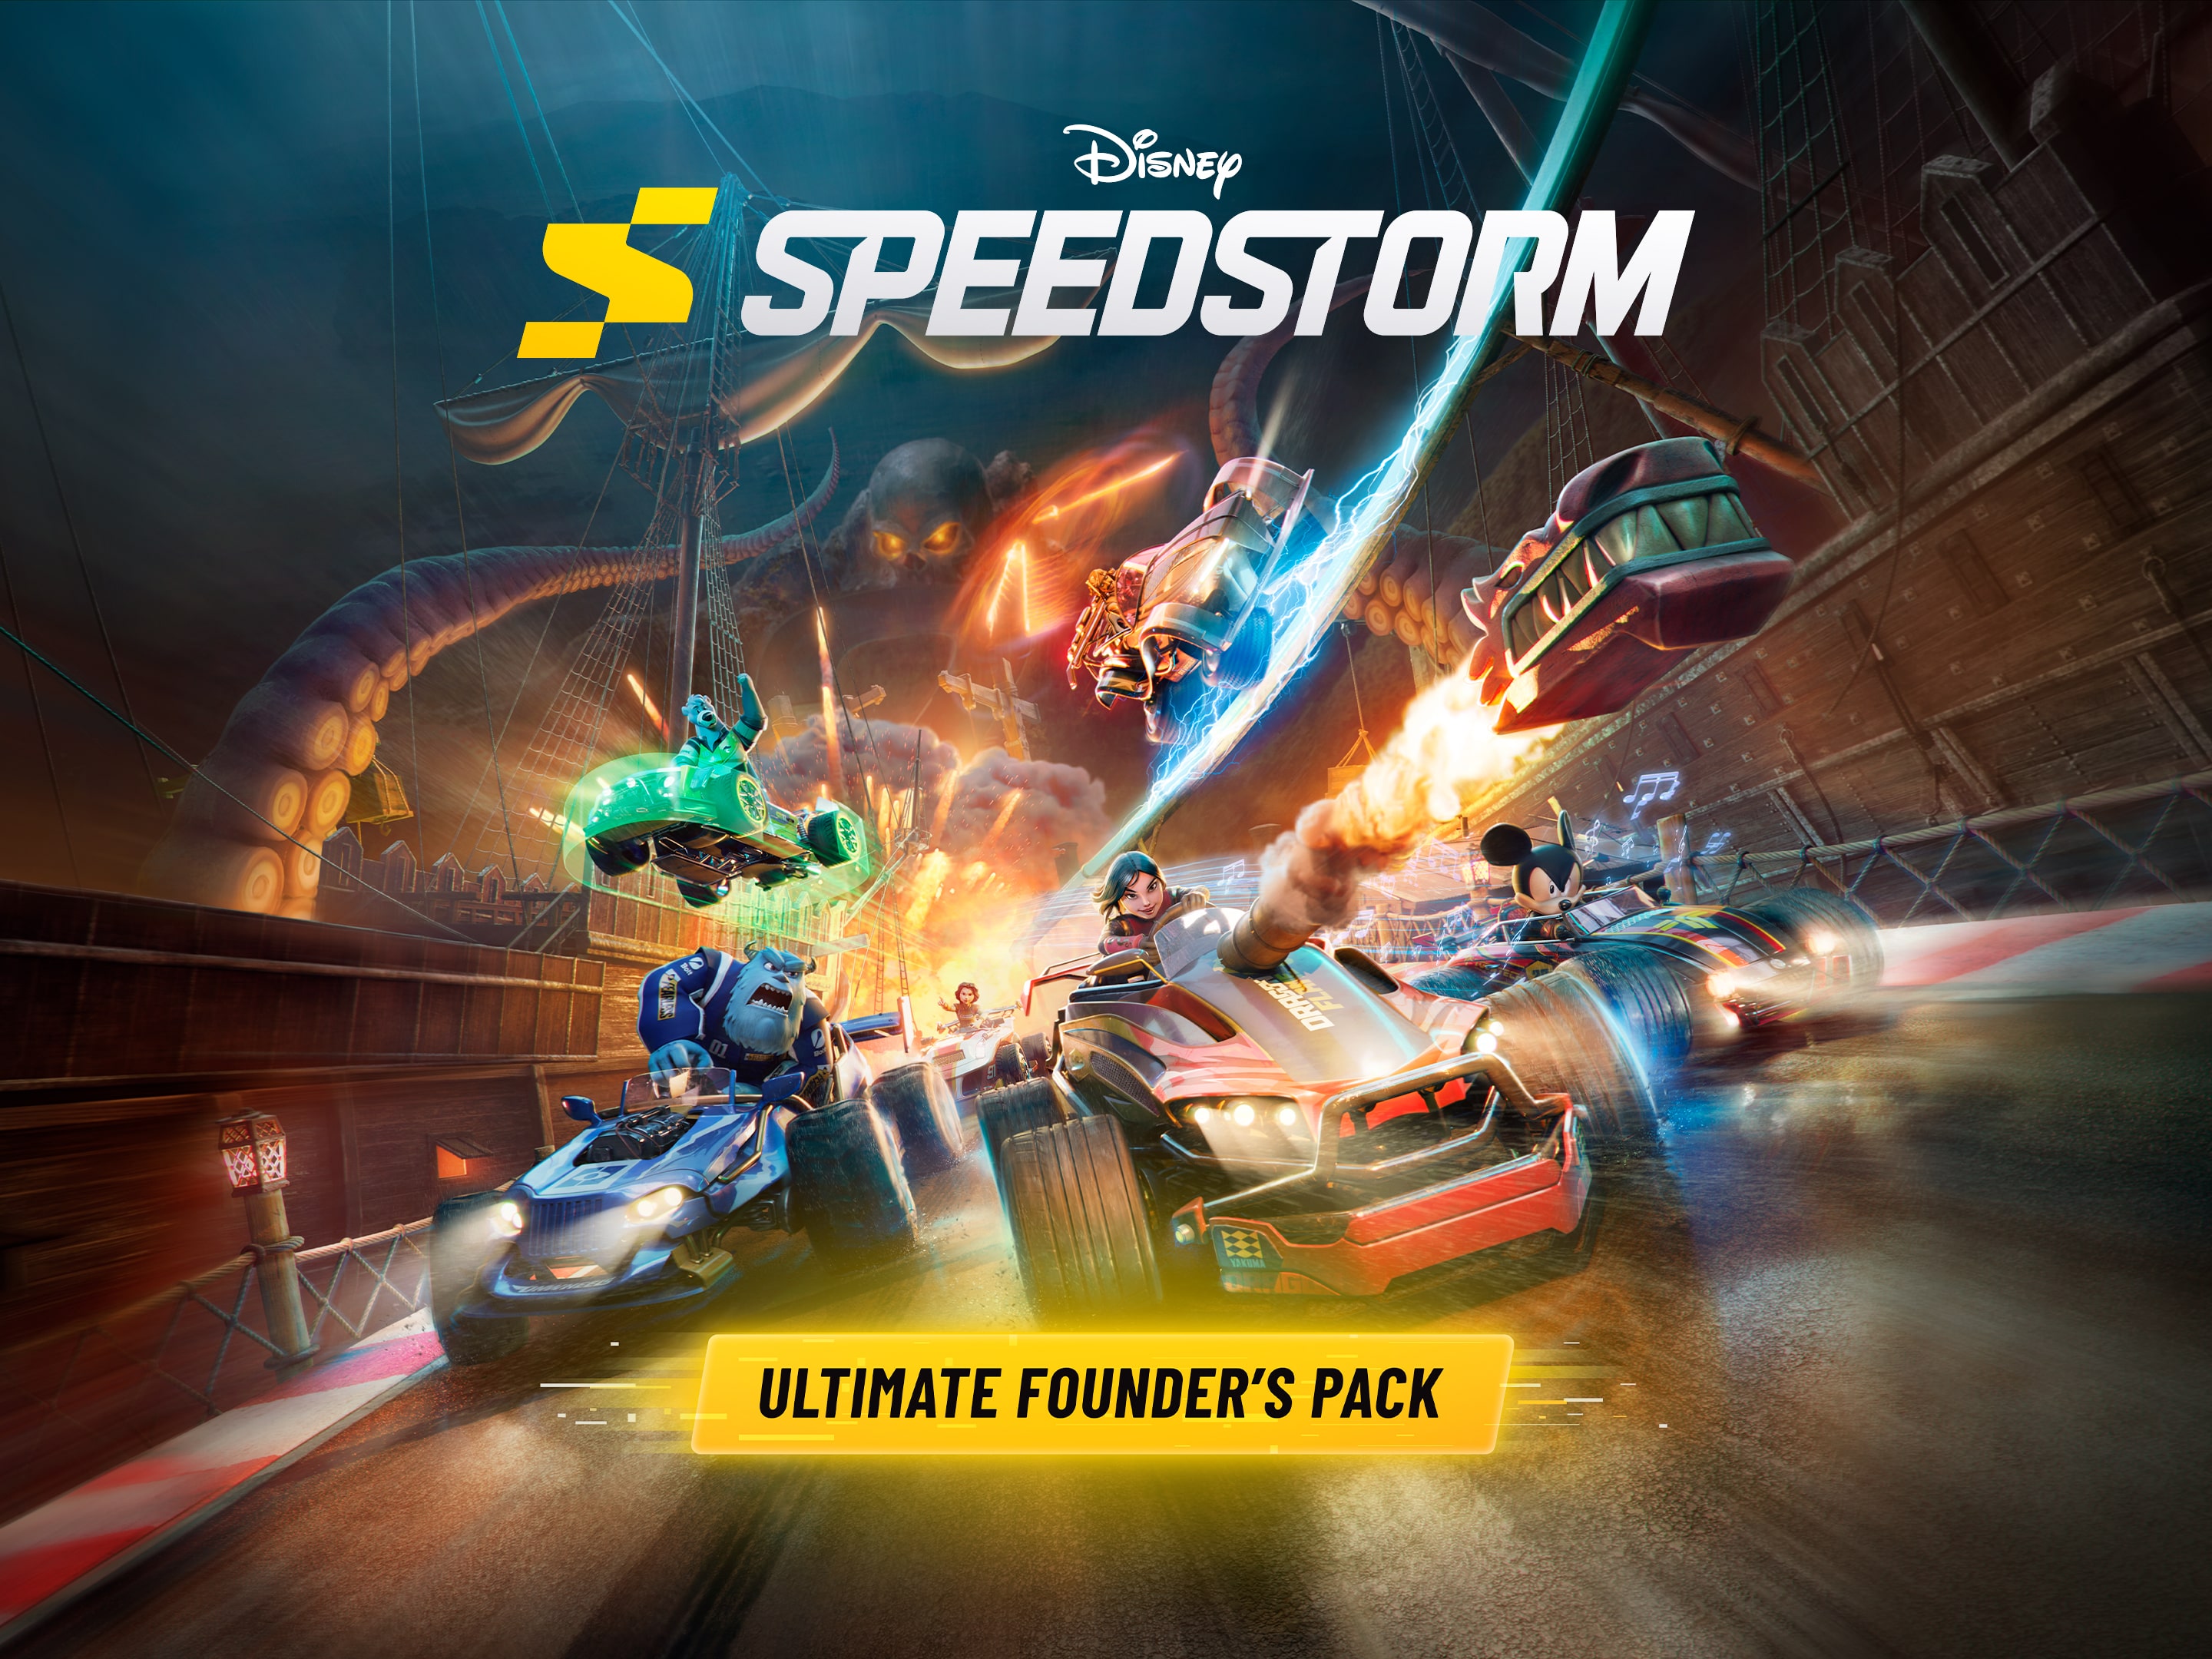 Rummet sympati Descent Disney Speedstorm - Standard Founder's Pack